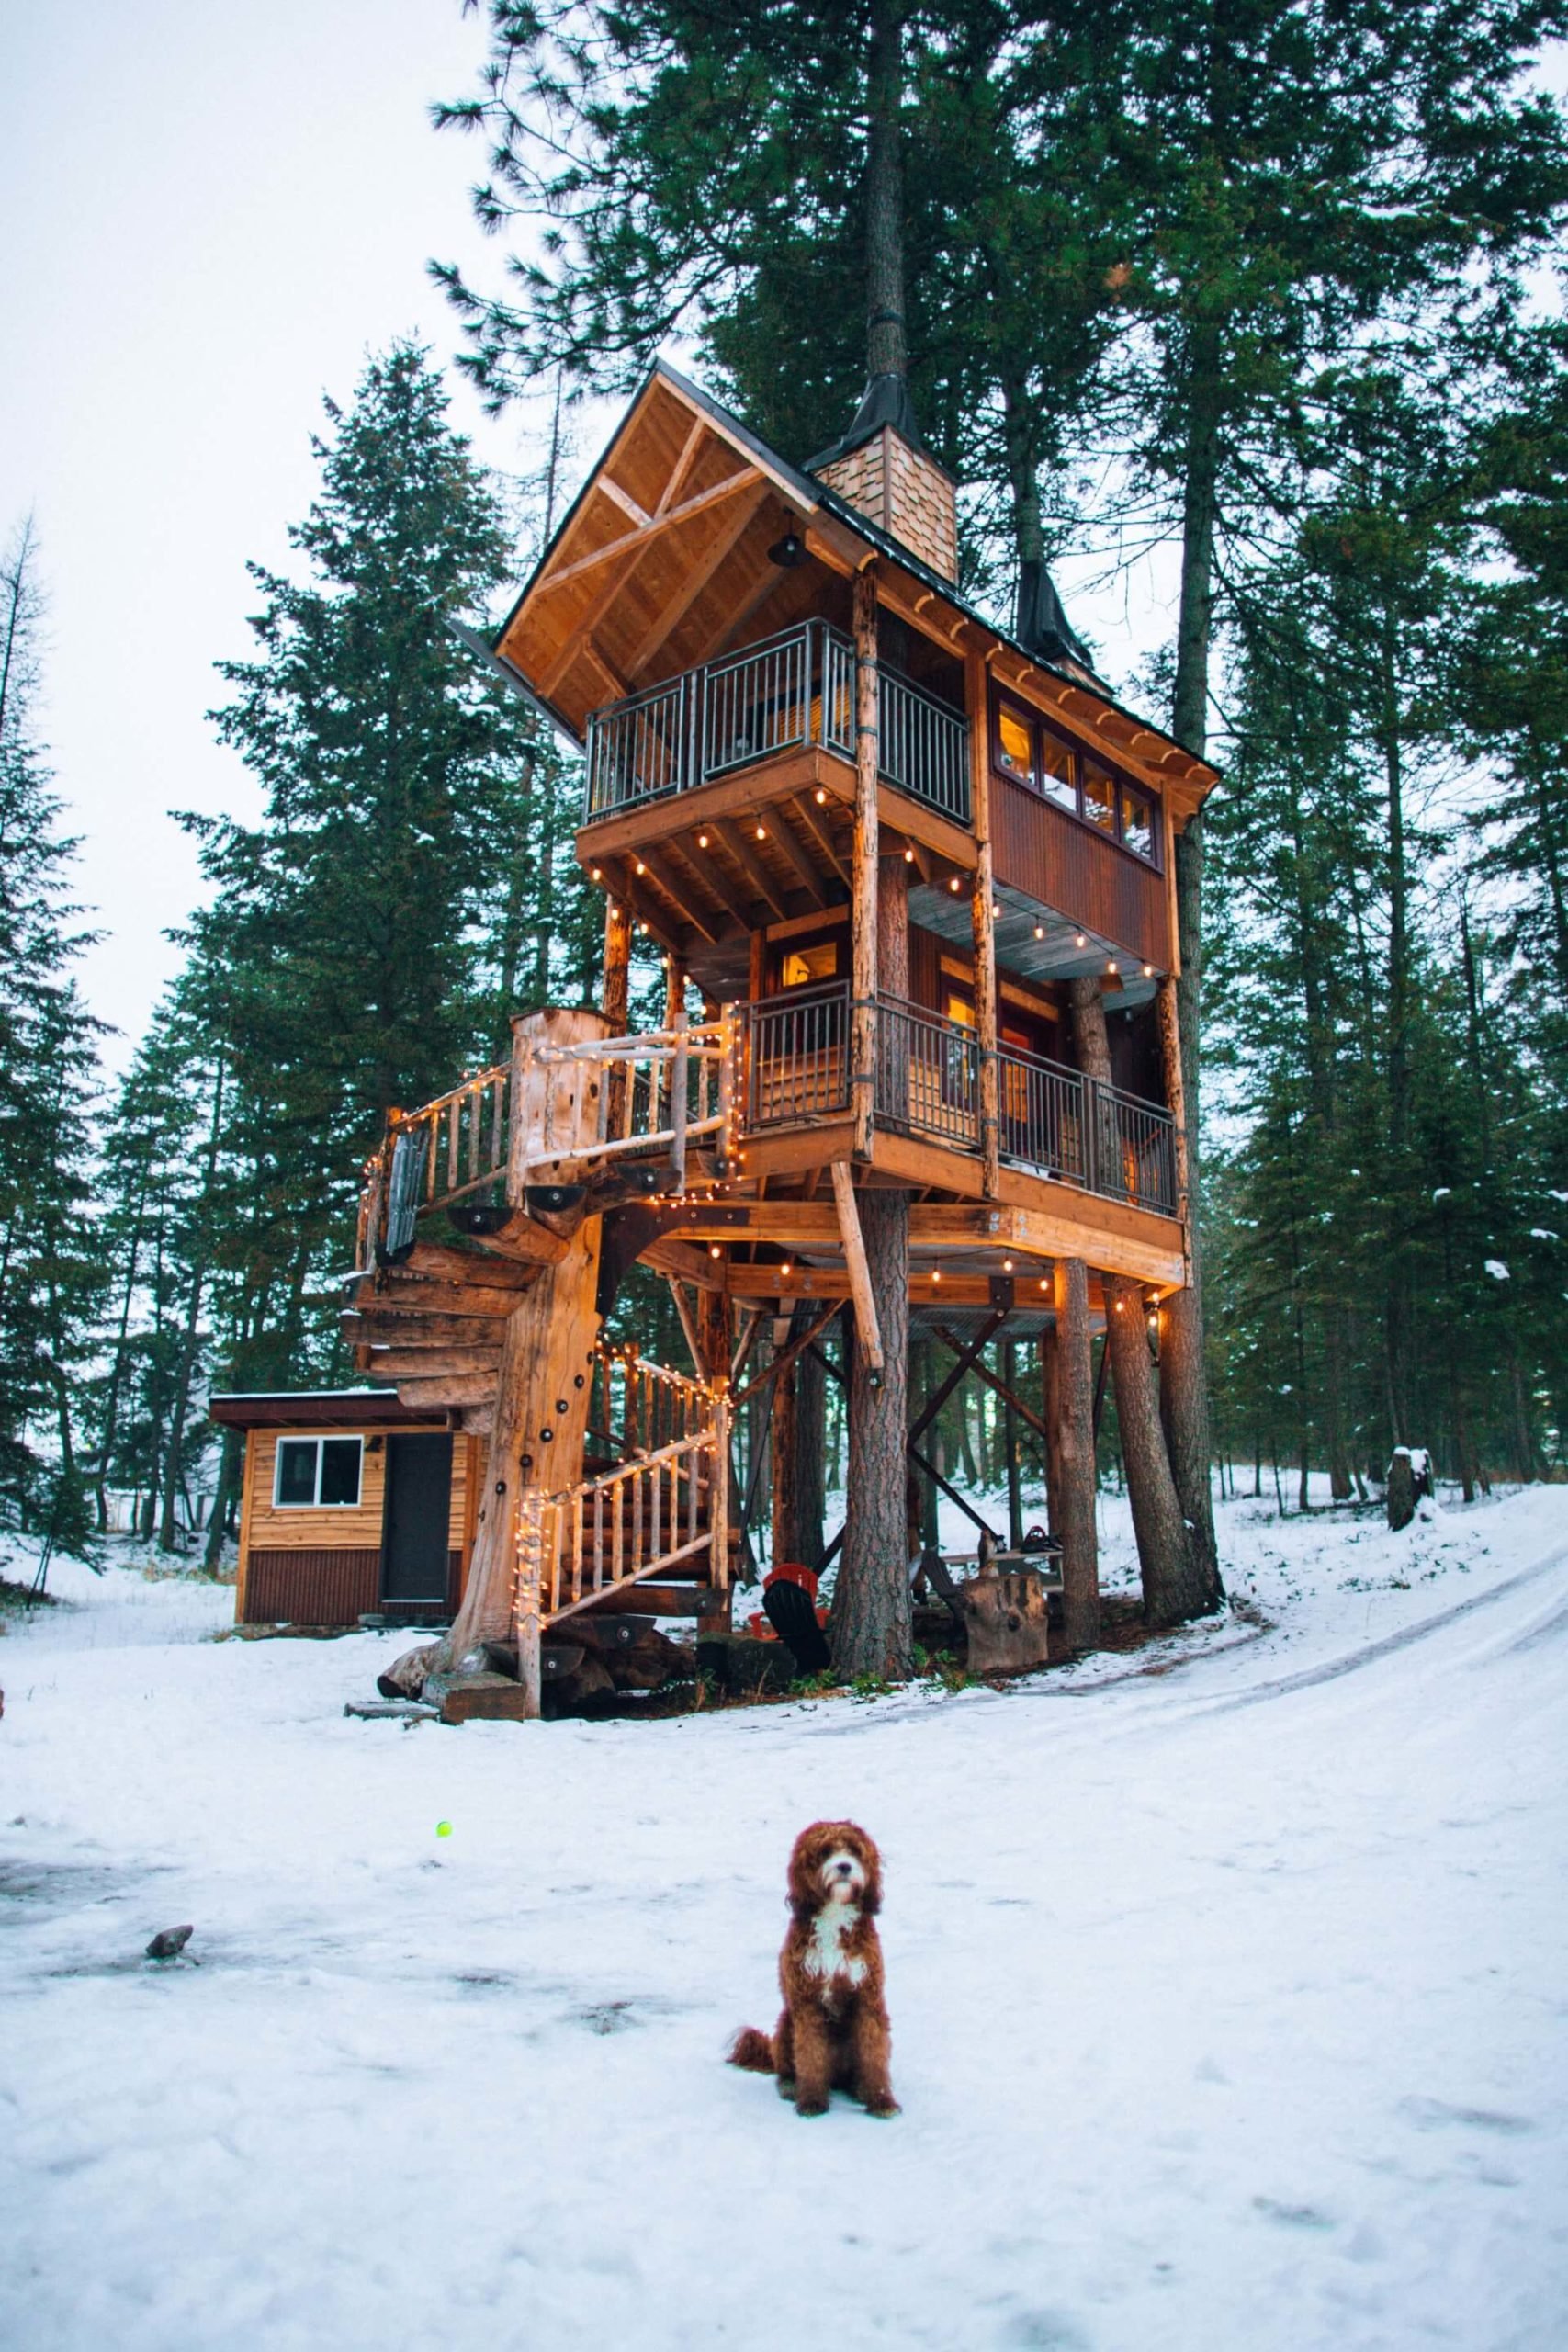 Ein rotbraunes Holzhaus in einem schneebedeckten Wald mit einem rotbraunen Hund in der Mitte des Rahmens